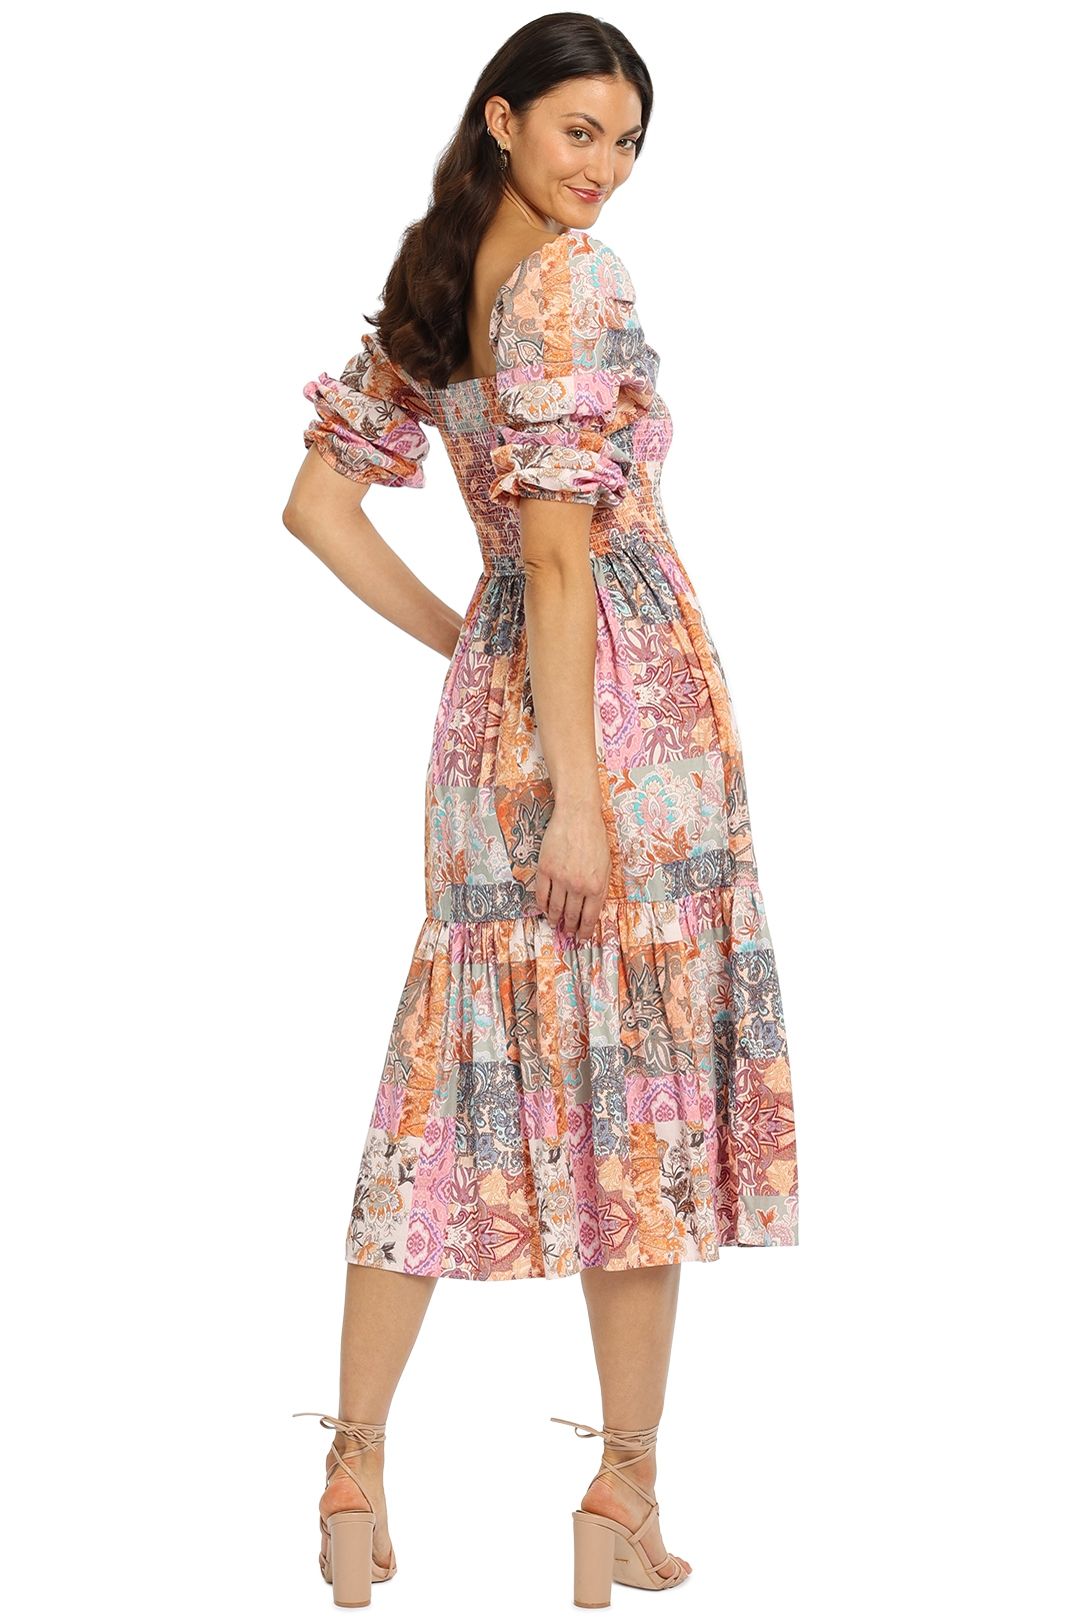 Kachel Allegra Dress floral print